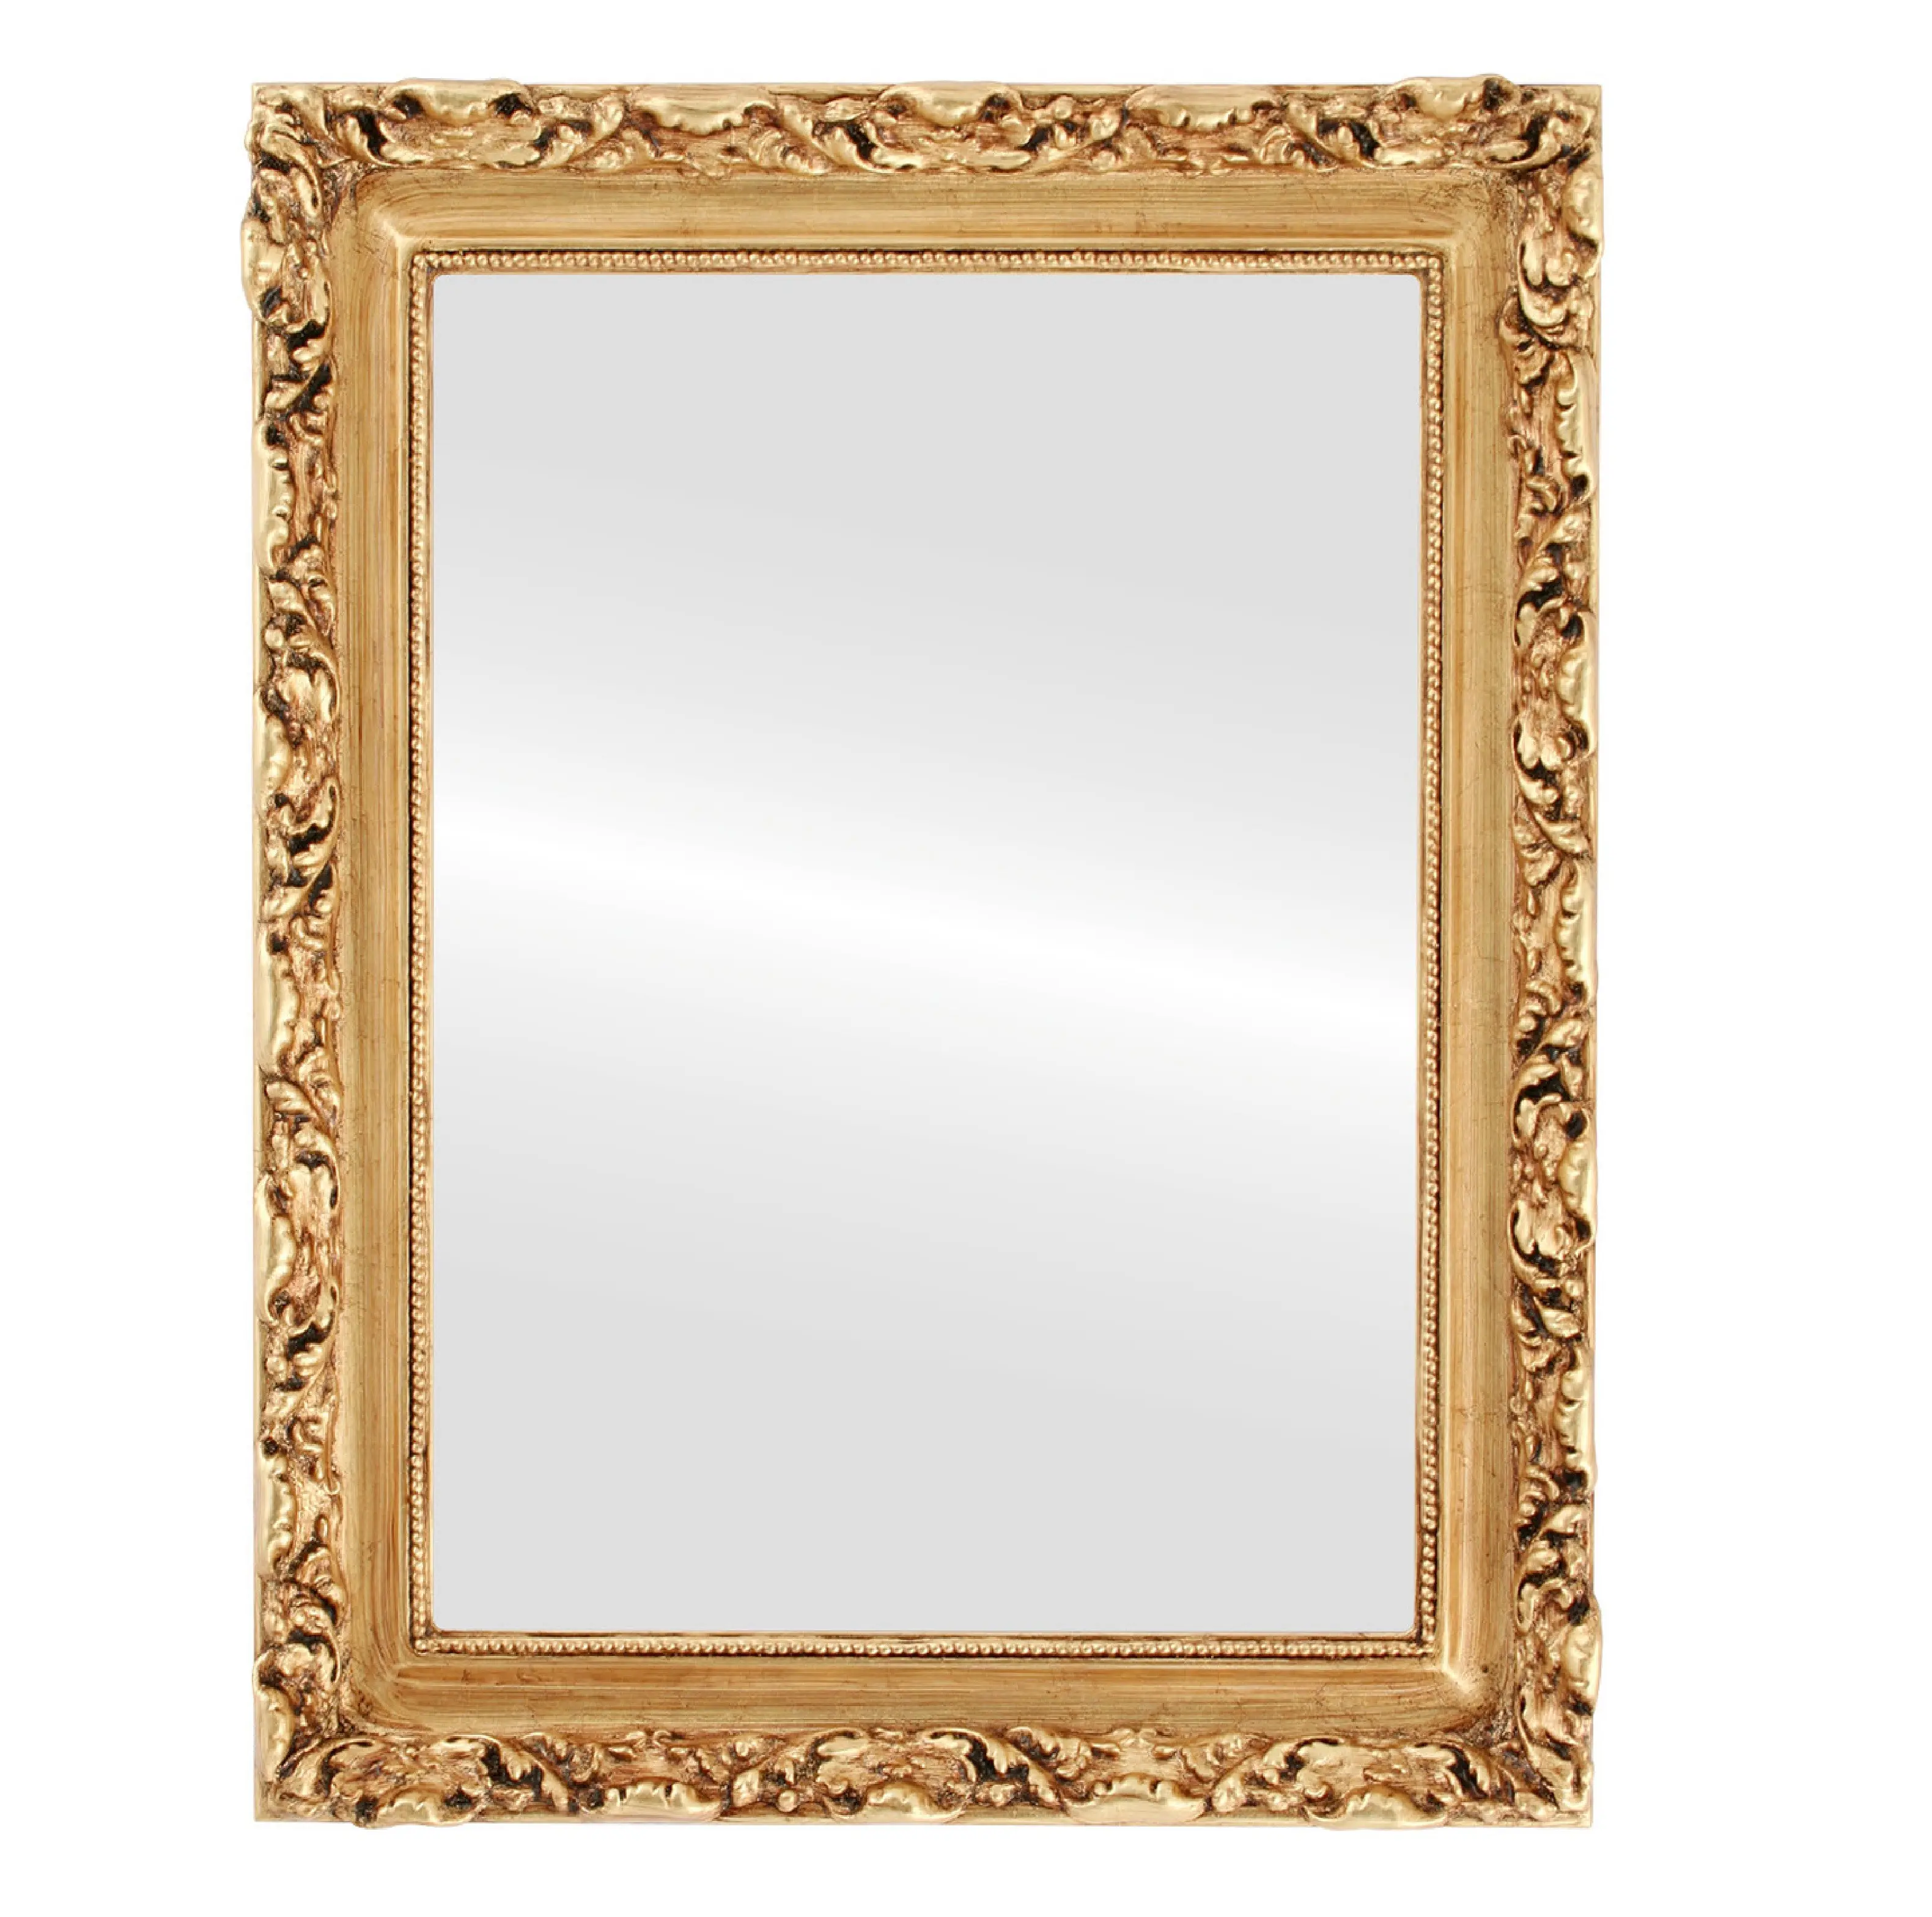 Hochwertiger quadratischer dekorativer schmiede eiserner Spiegel Hot Selling Handmade Large Decorative Mirror